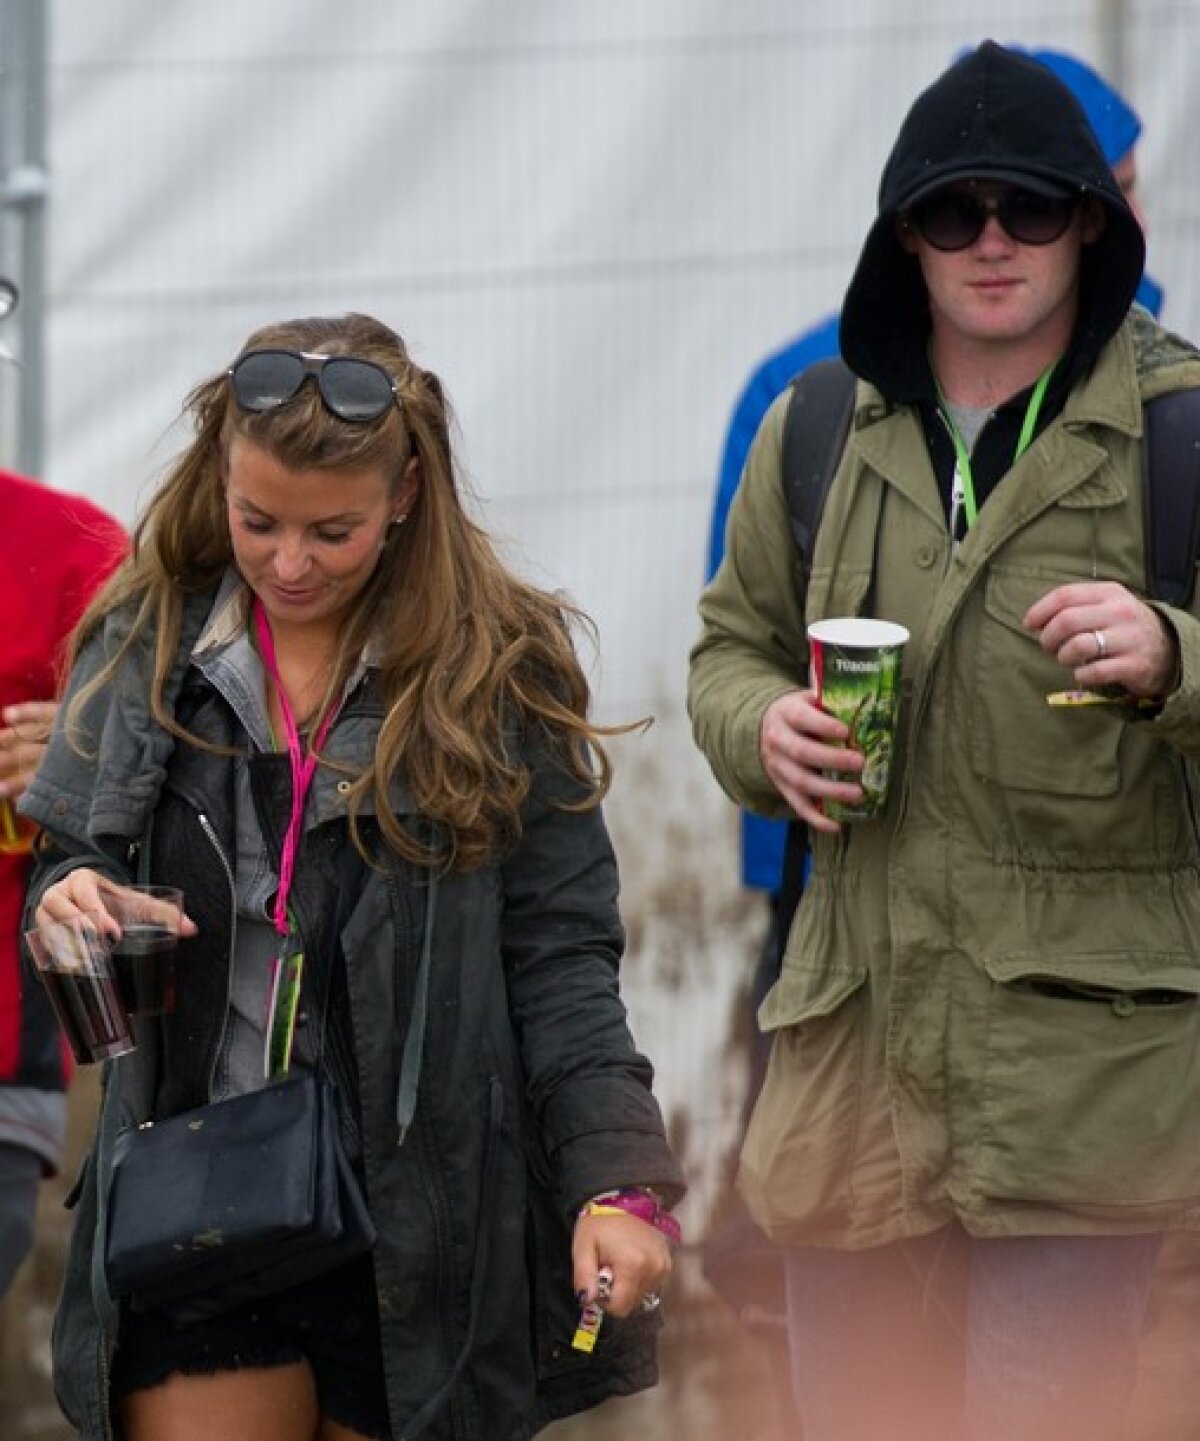 FOTO » Rivalii Carroll şi Rooney, undercover la festivalul de la Glastonbury